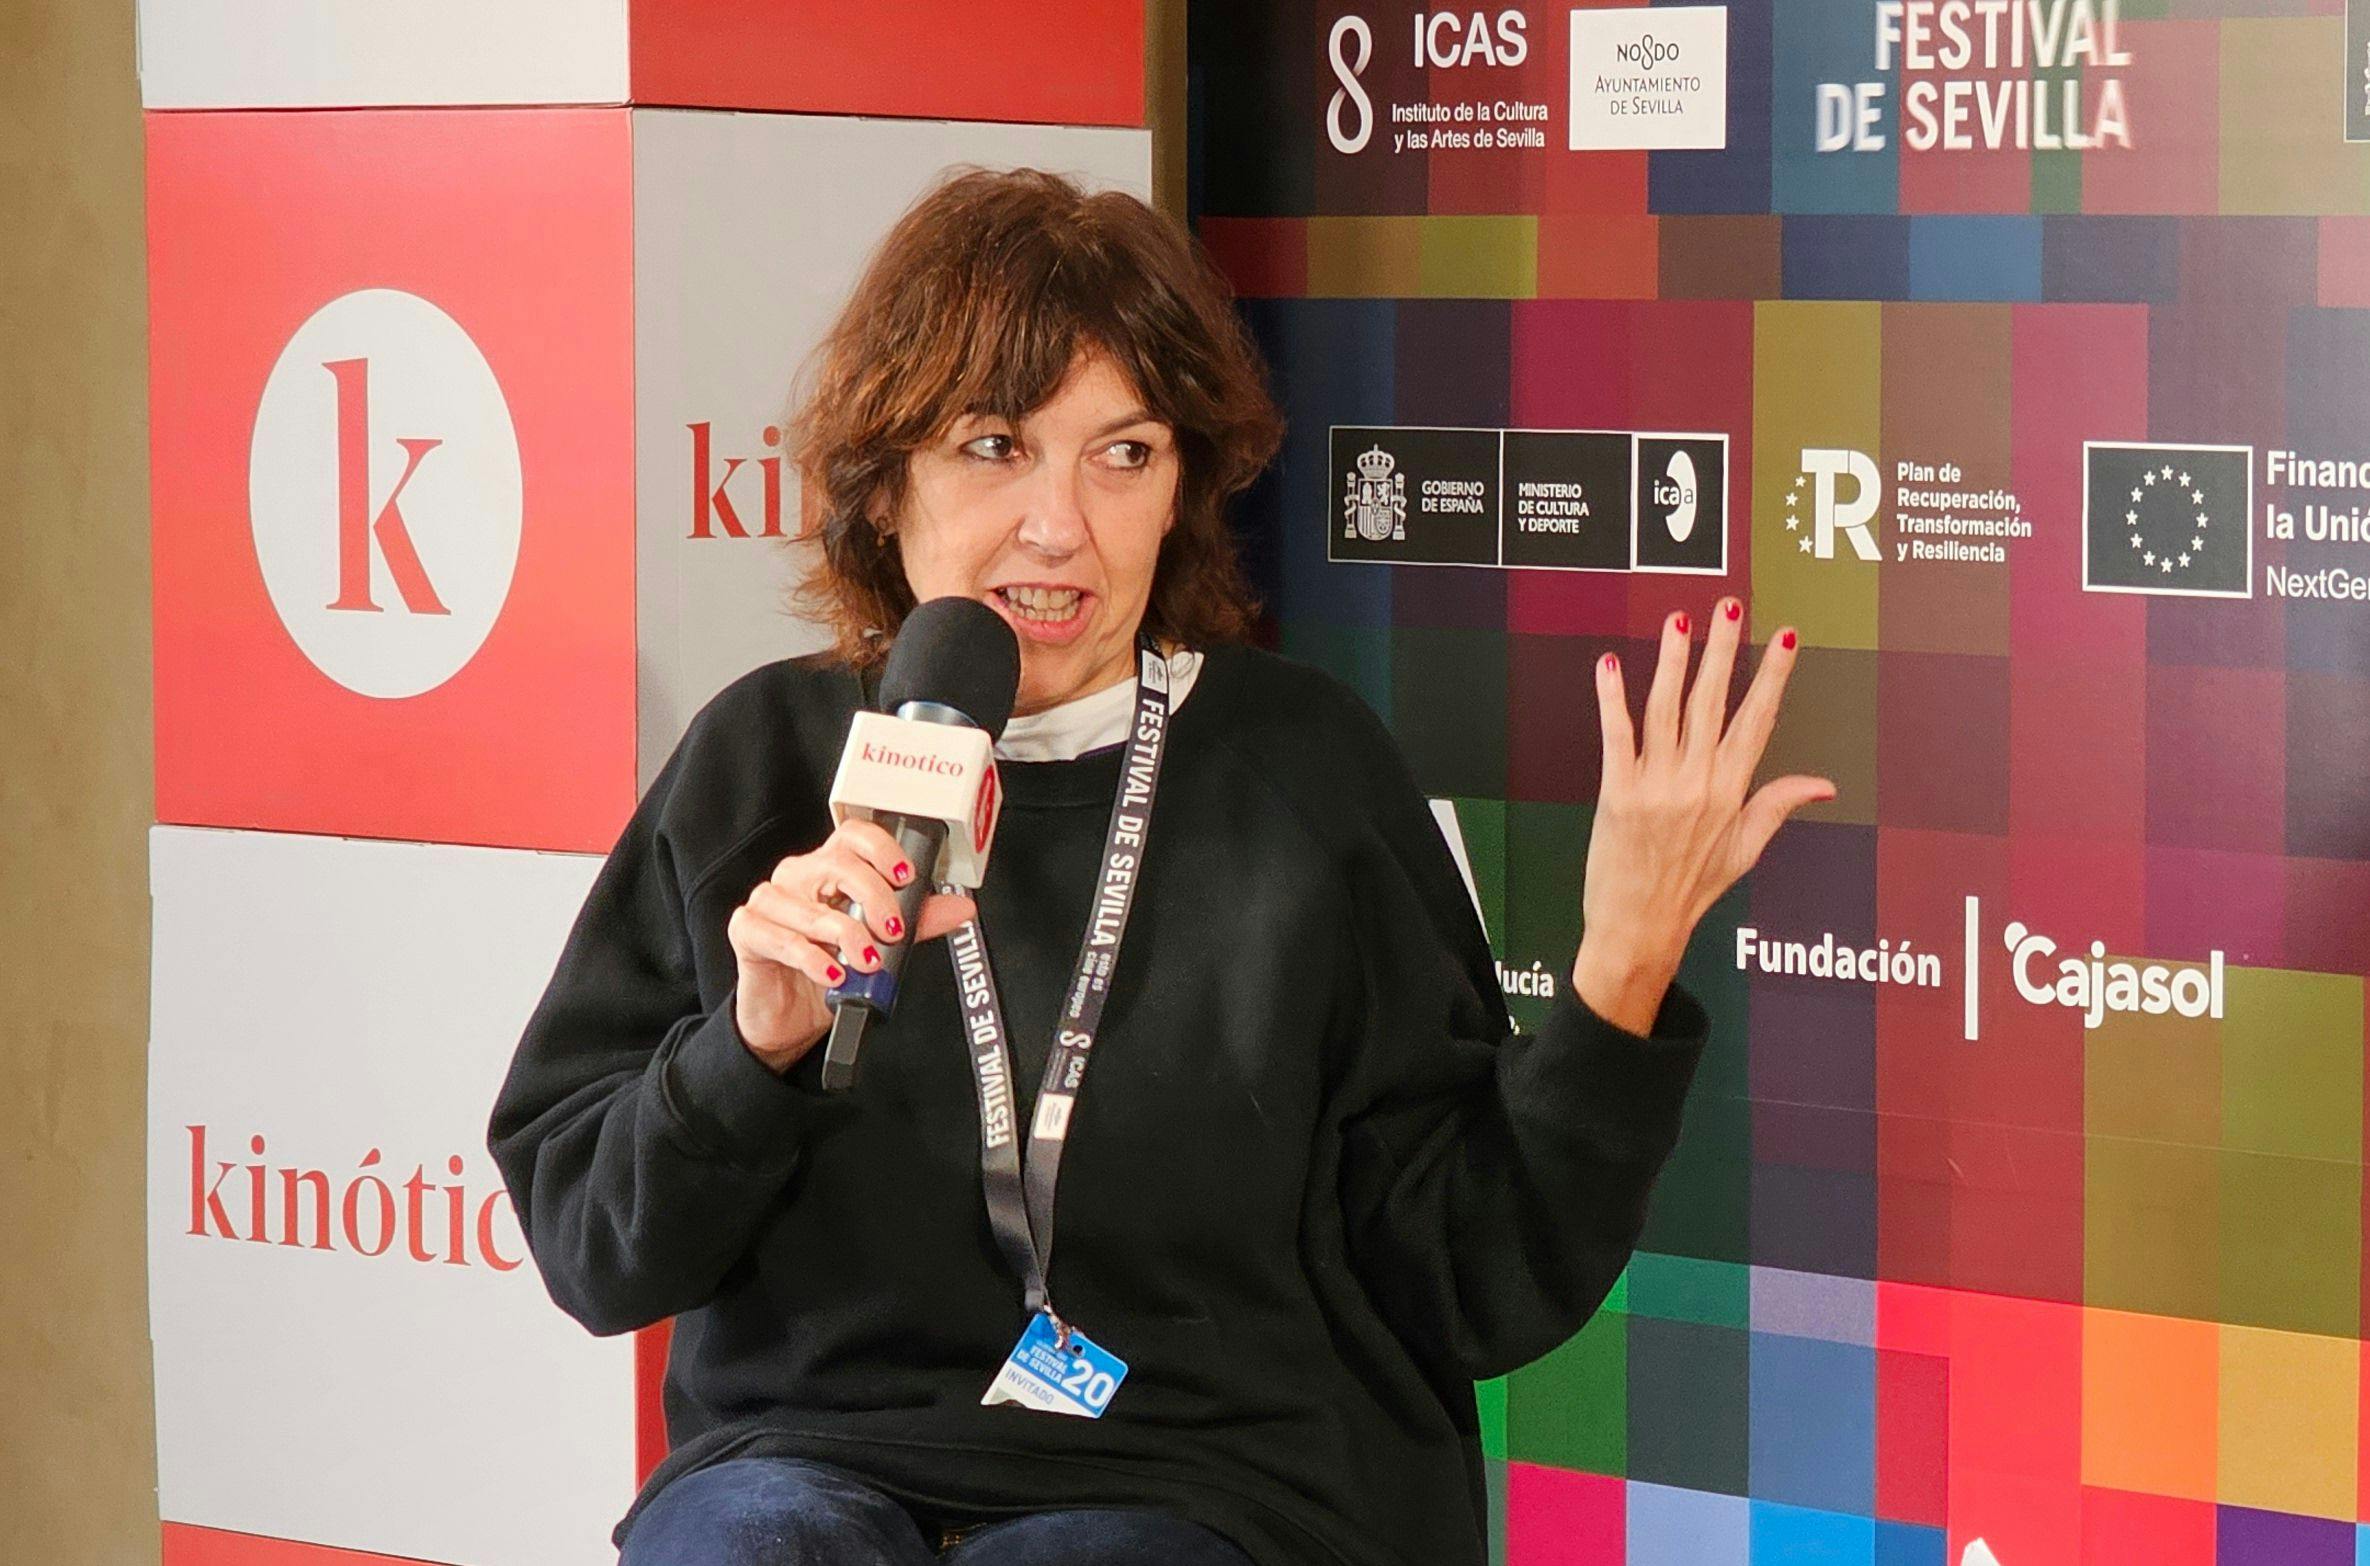 Virginia García del Pino conversa con Kinótico por la presentación de su película ‘La estafa del amor’ en el Festival de Sevilla